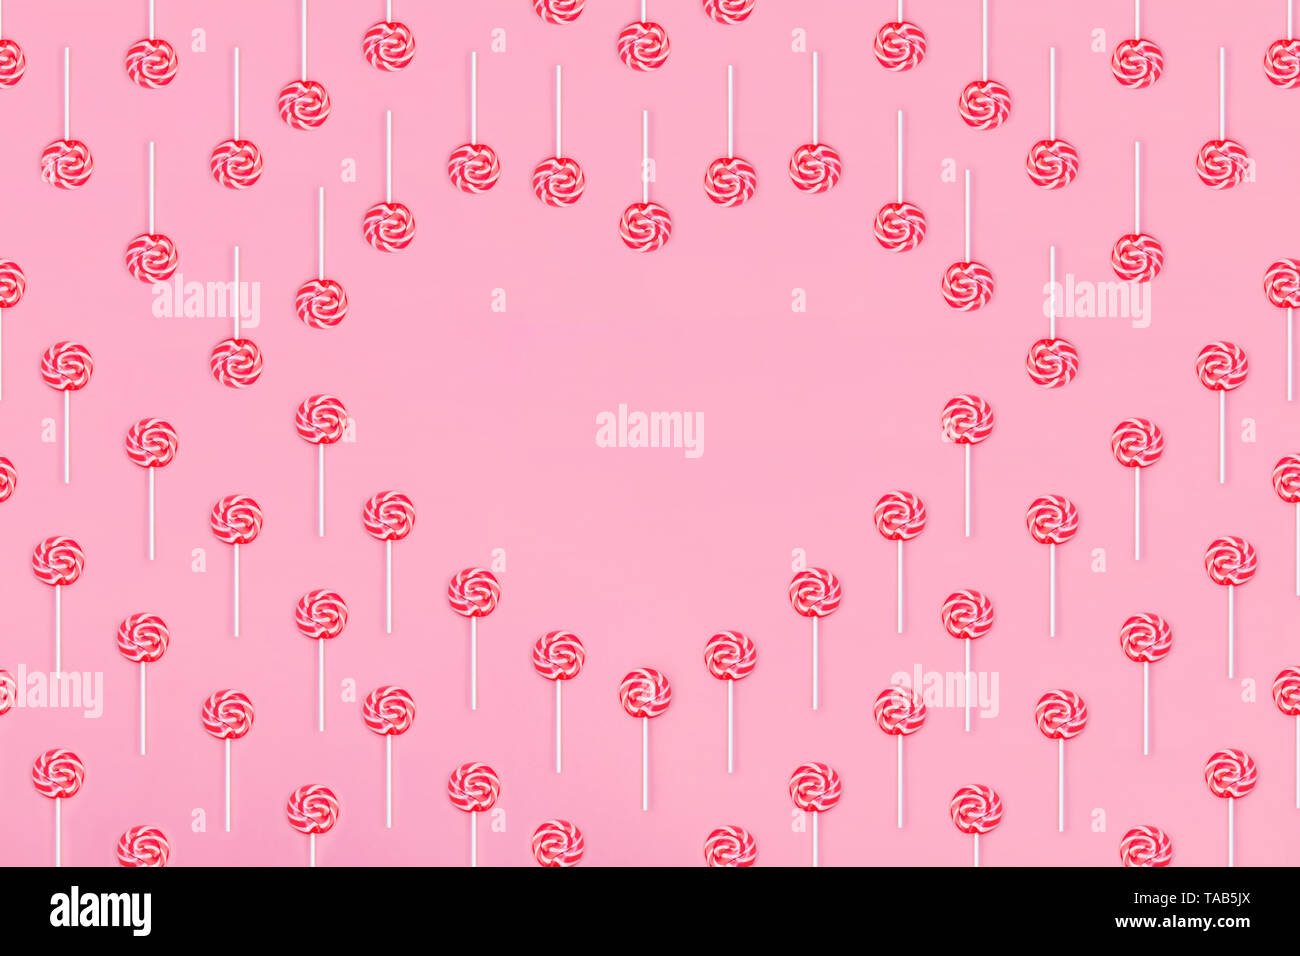 Corazón de piruleta caramelos sobre fondo de color rosa, copie el espacio. Concepto de infancia dulce. Tarjeta de felicitación el día de San Valentín Foto de stock